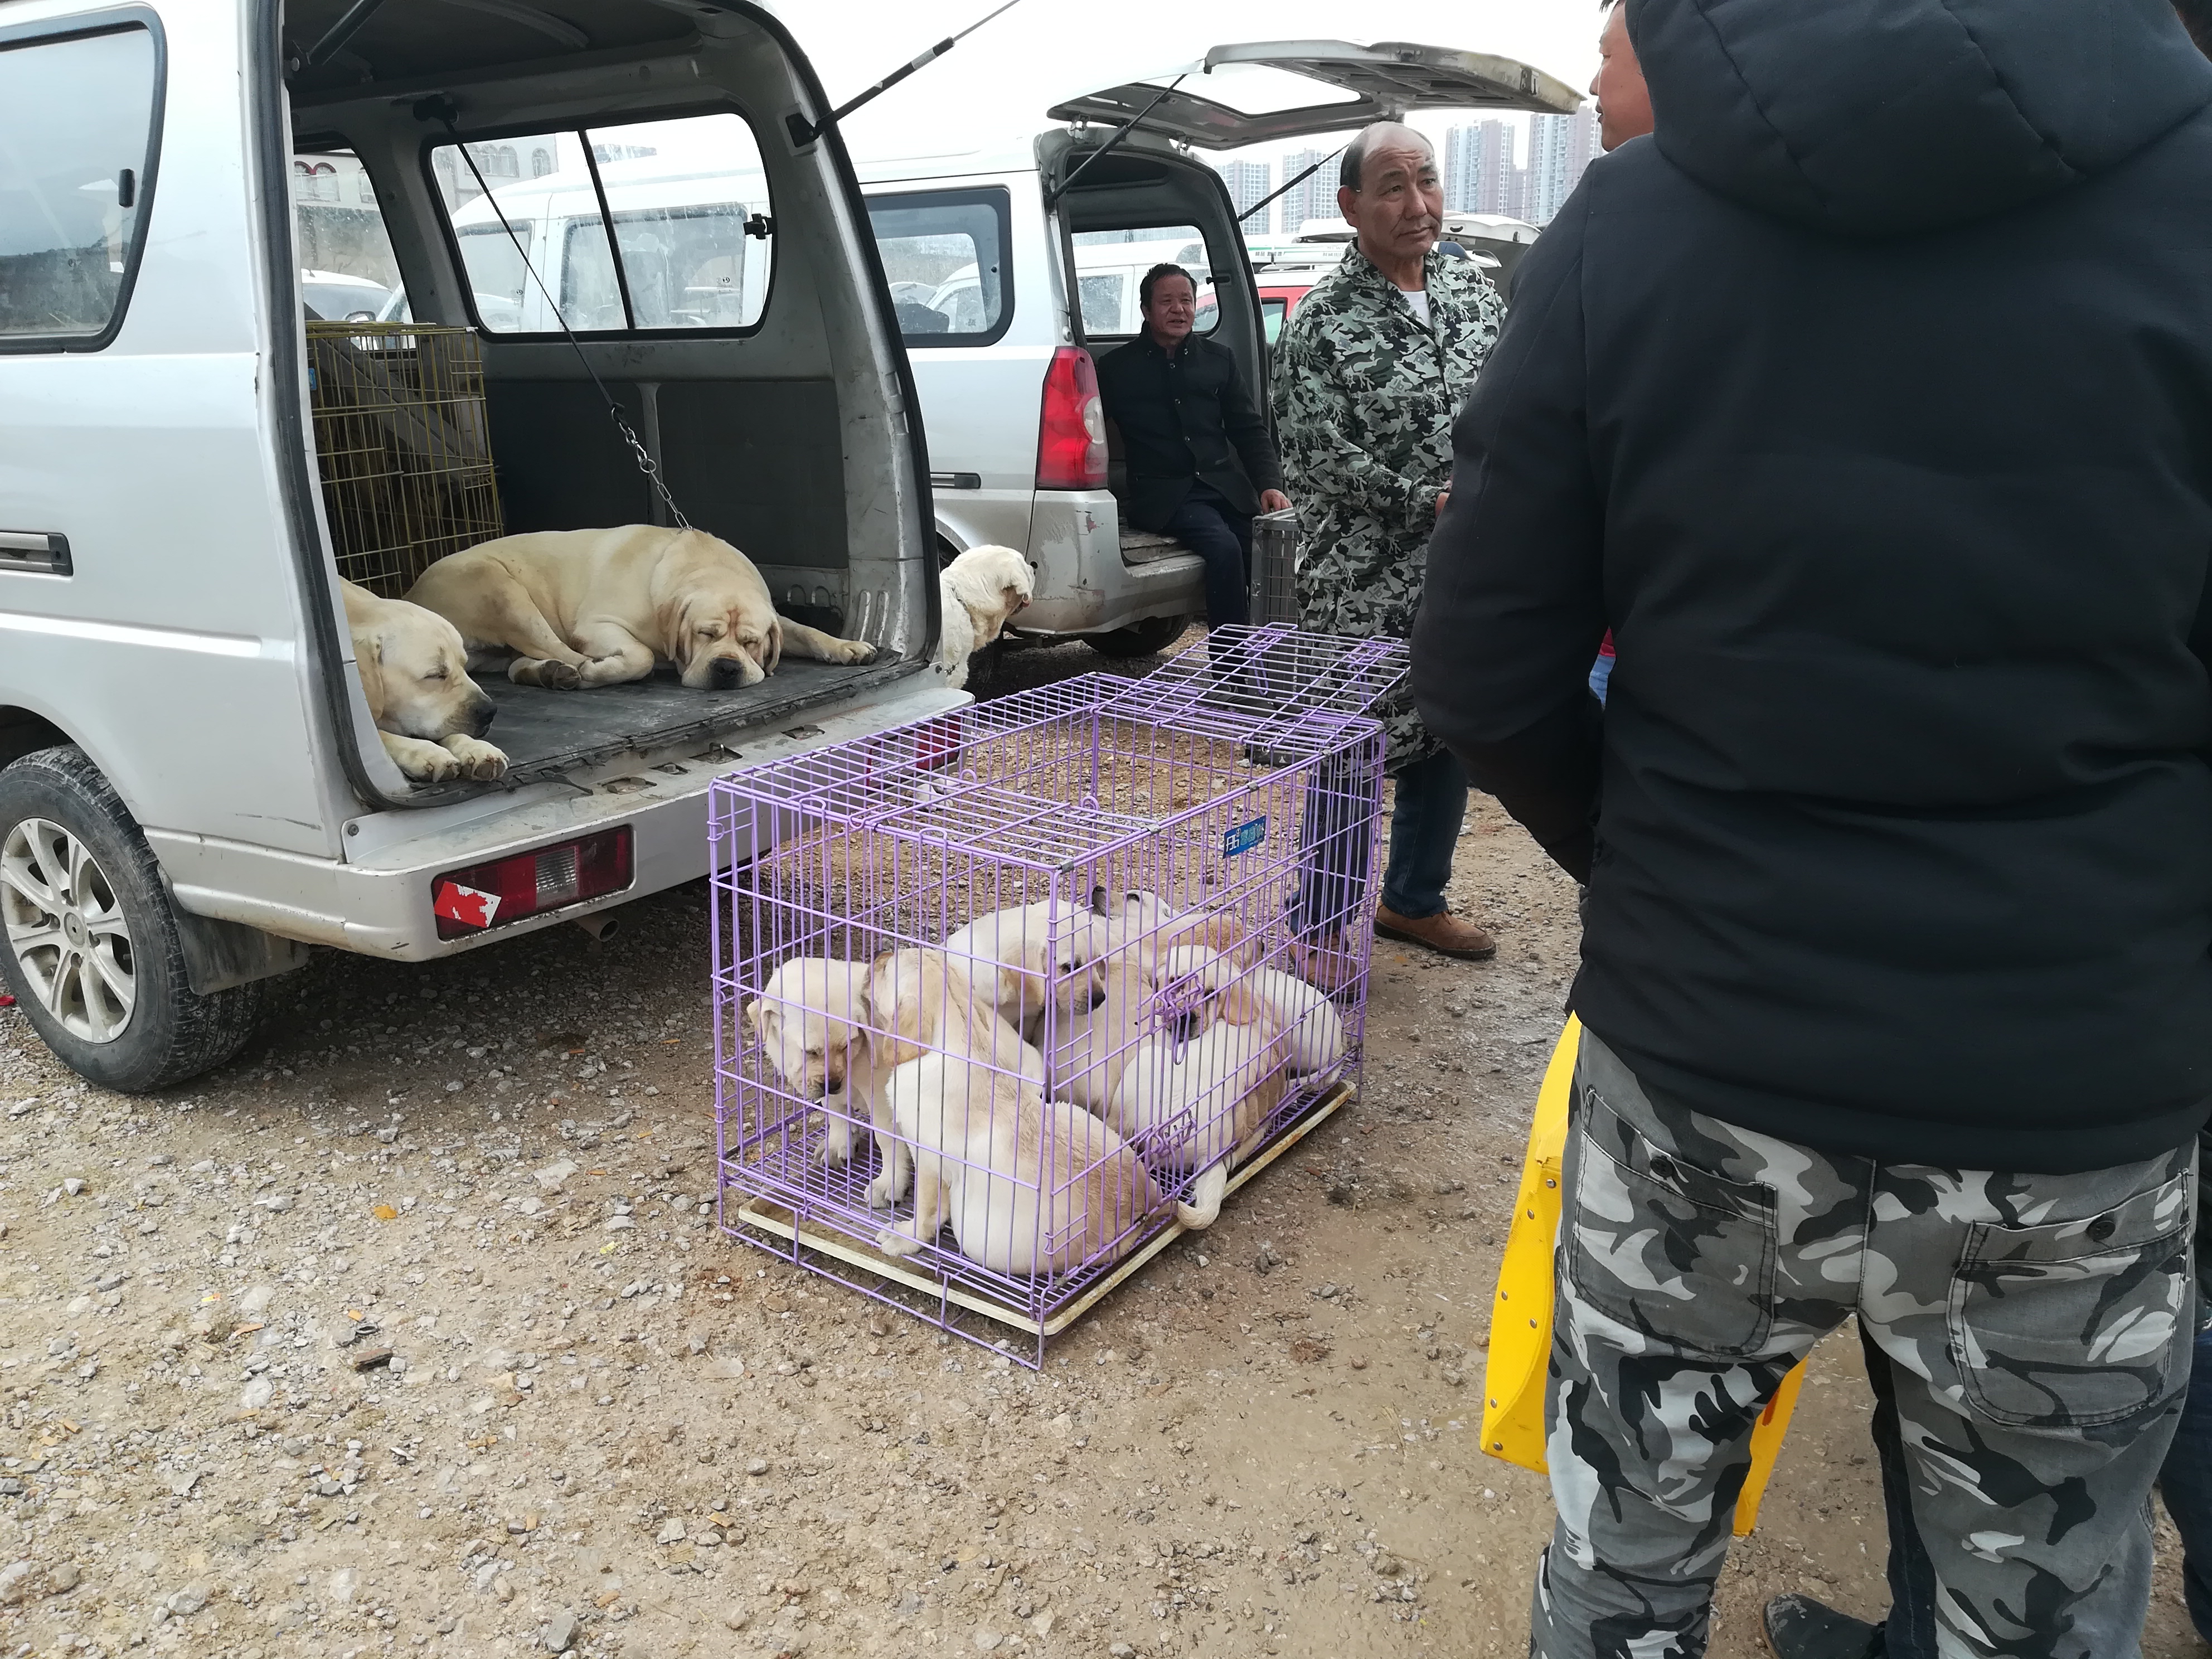 饲养场商贩低价出售拉布拉多，幼犬喊价700元成犬1300元！